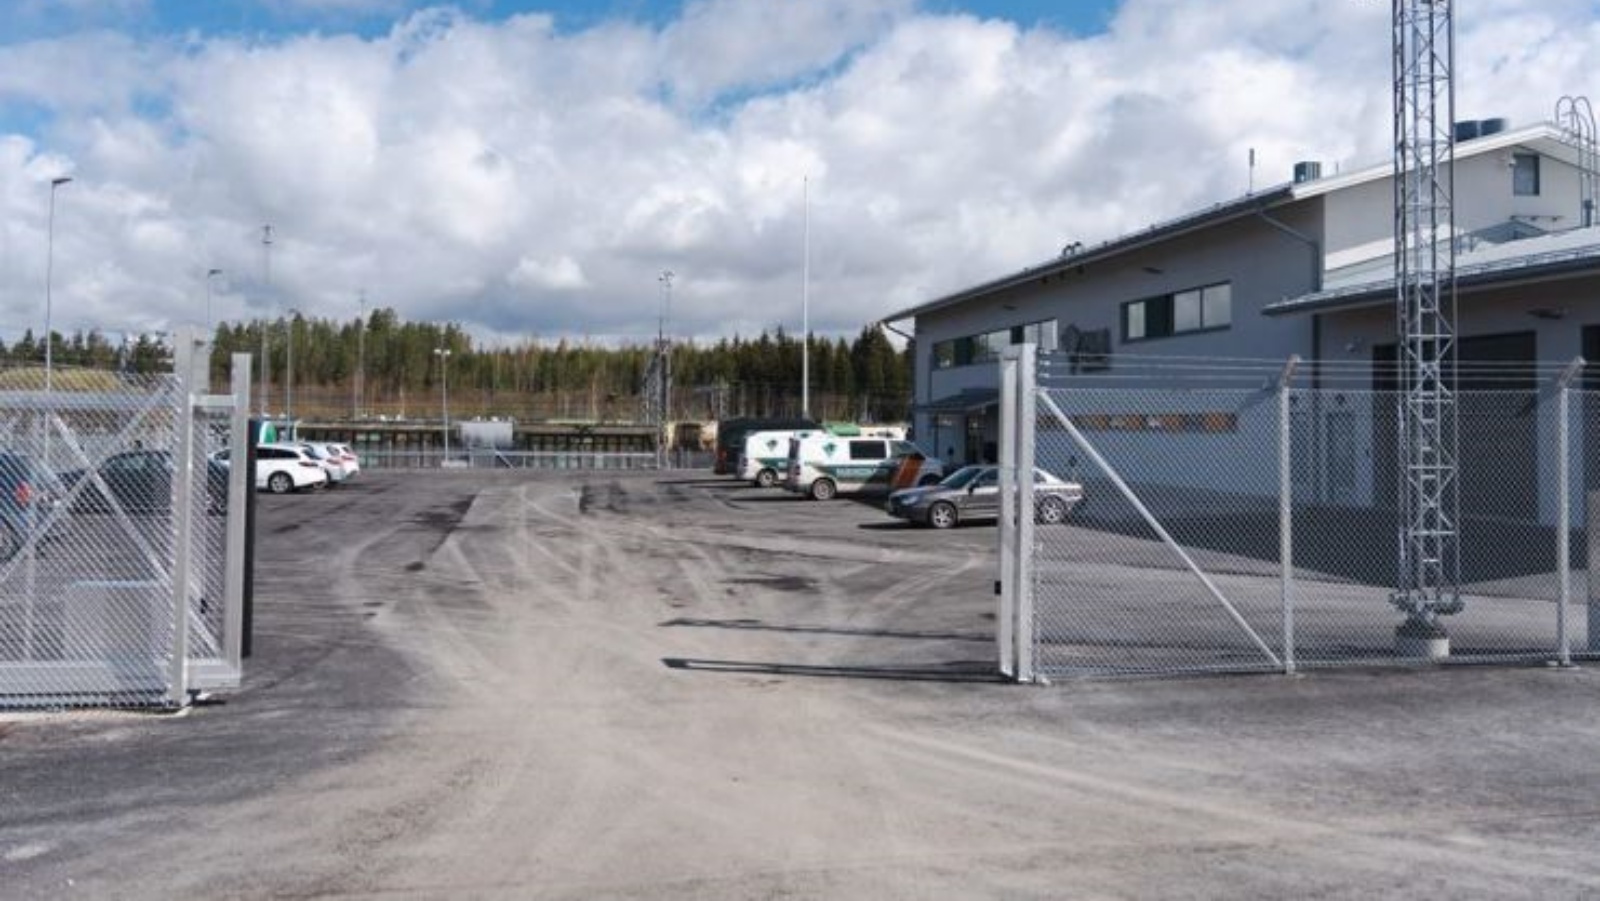 محطة حرس الحدود على بعد مئات الأمتار فقط من الحدود الروسية في جنوب شرق فنلندا 13 مايو 2022